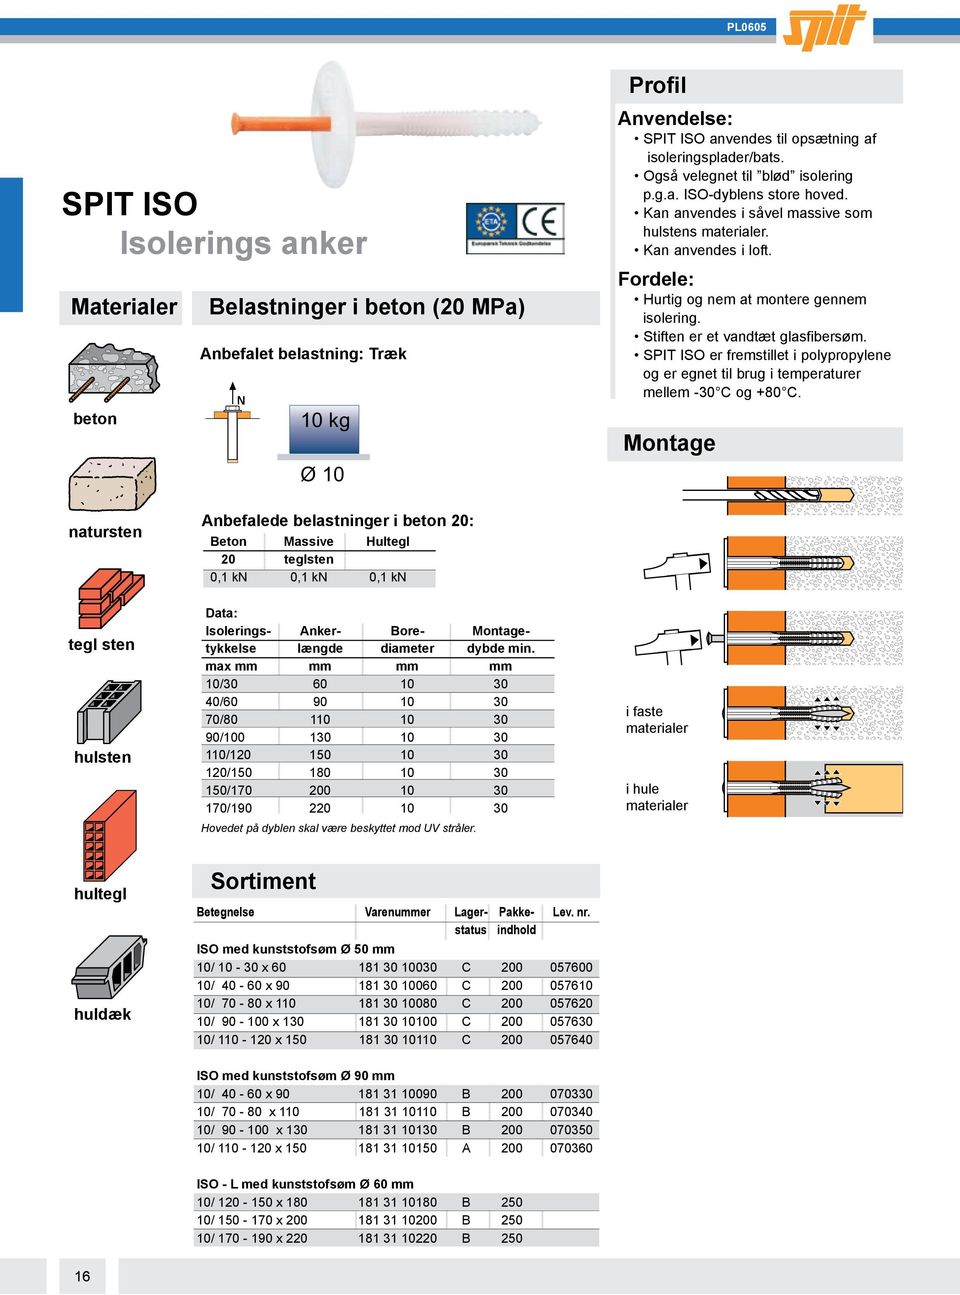 SPIT ISO er fremstillet i polypropylene og er egnet til brug i temperaturer mellem -30 C og +80 C.